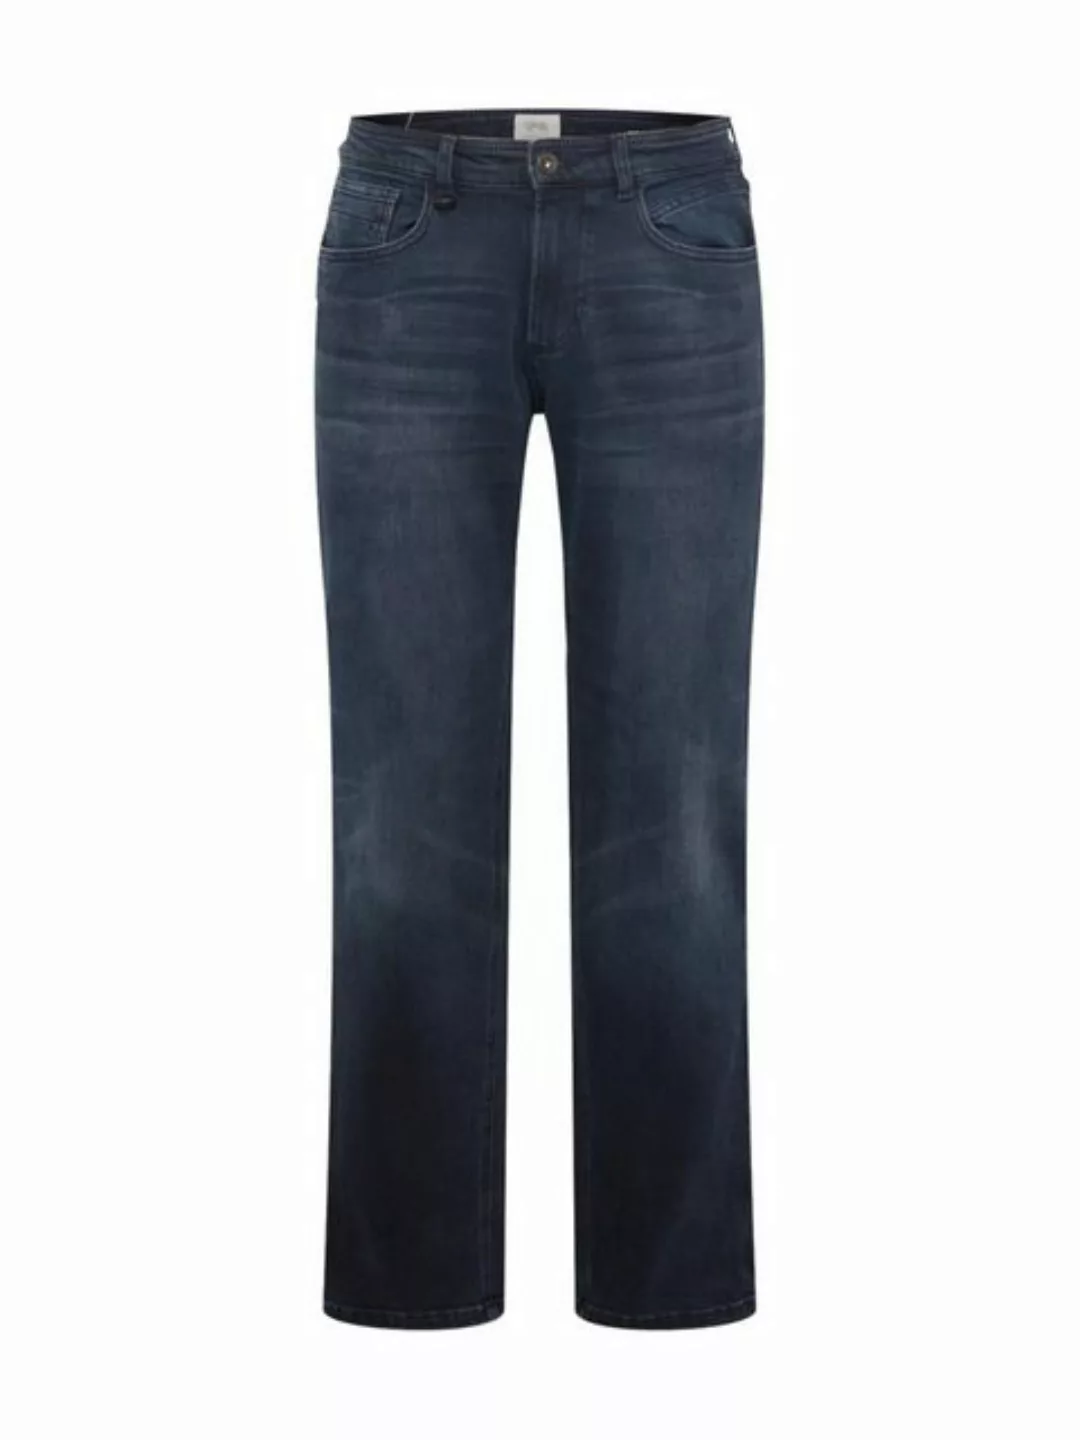 camel active 5-Pocket-Jeans 488375 9D62 used look günstig online kaufen